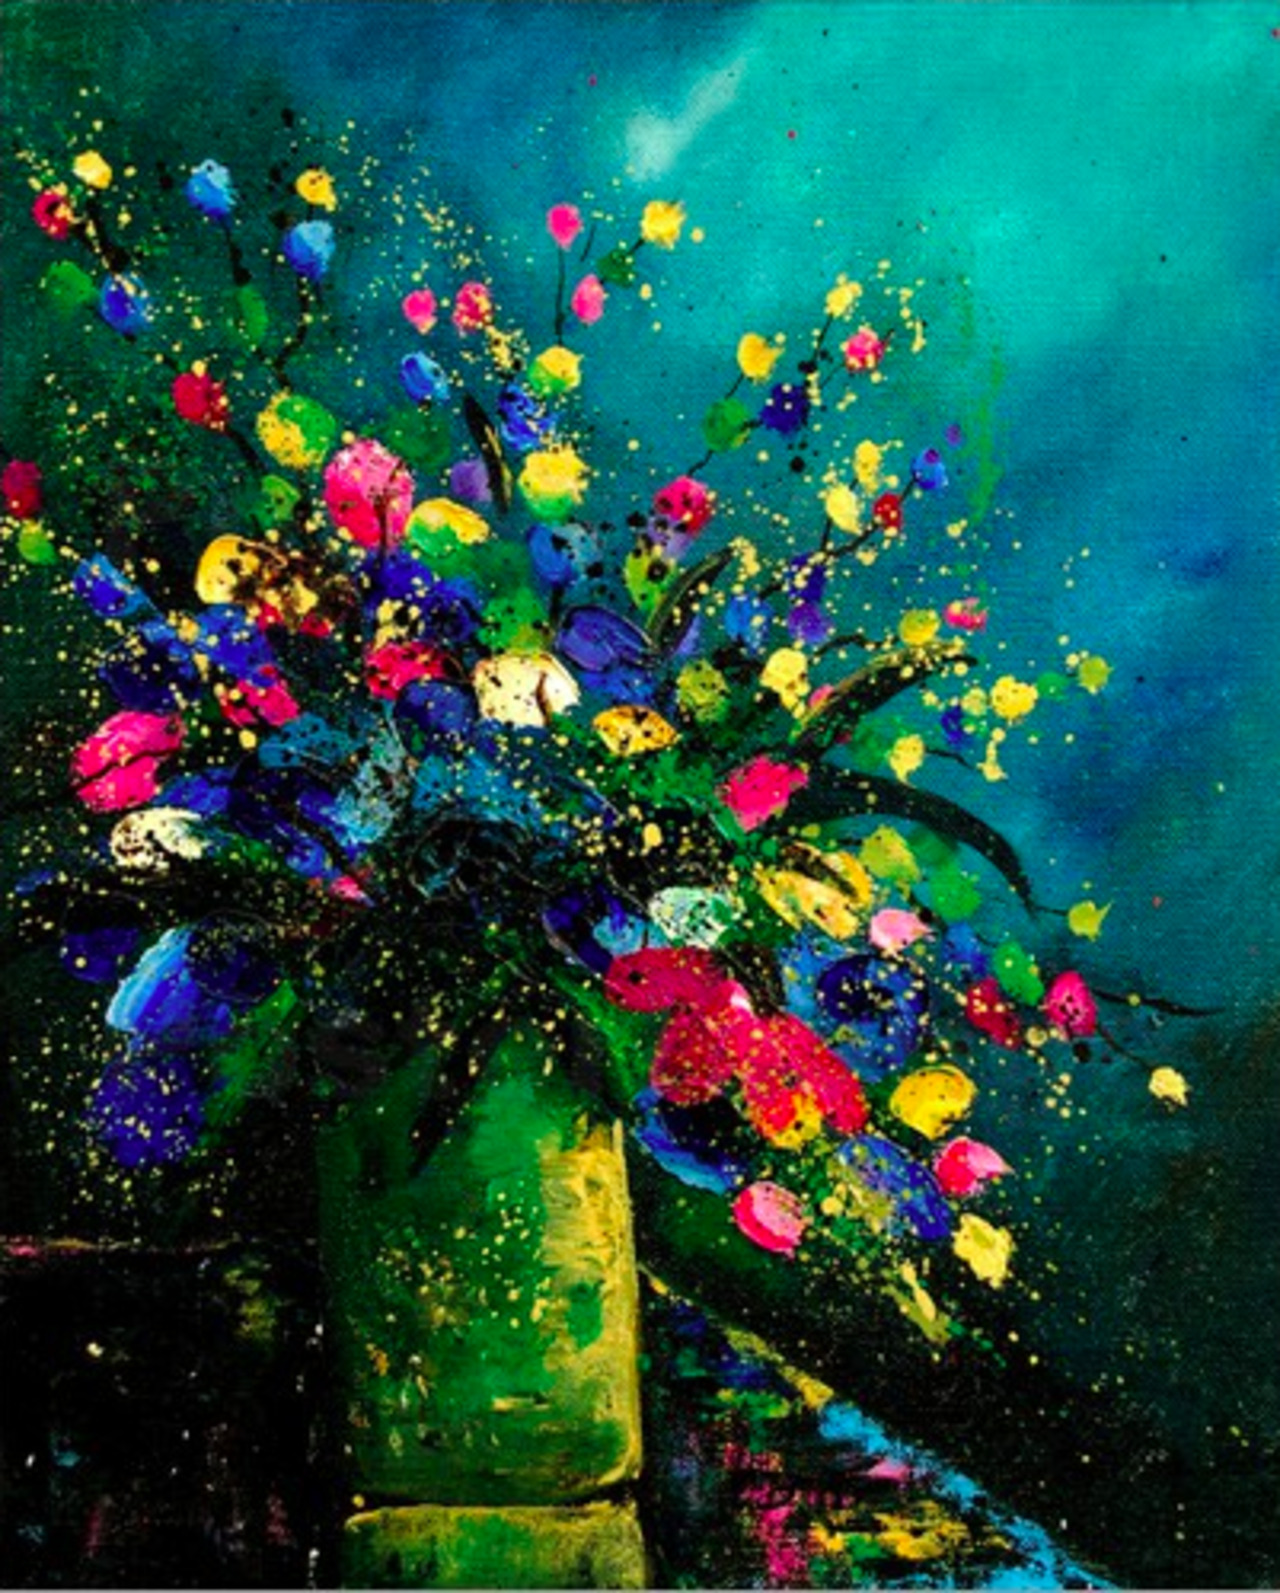 #Painting by Pol Ledent #art #flowers 
http://img.posterlounge.de/images/wbig/pol-ledent-bunch0807-218355.jpg http://t.co/eSSLhWMK9d